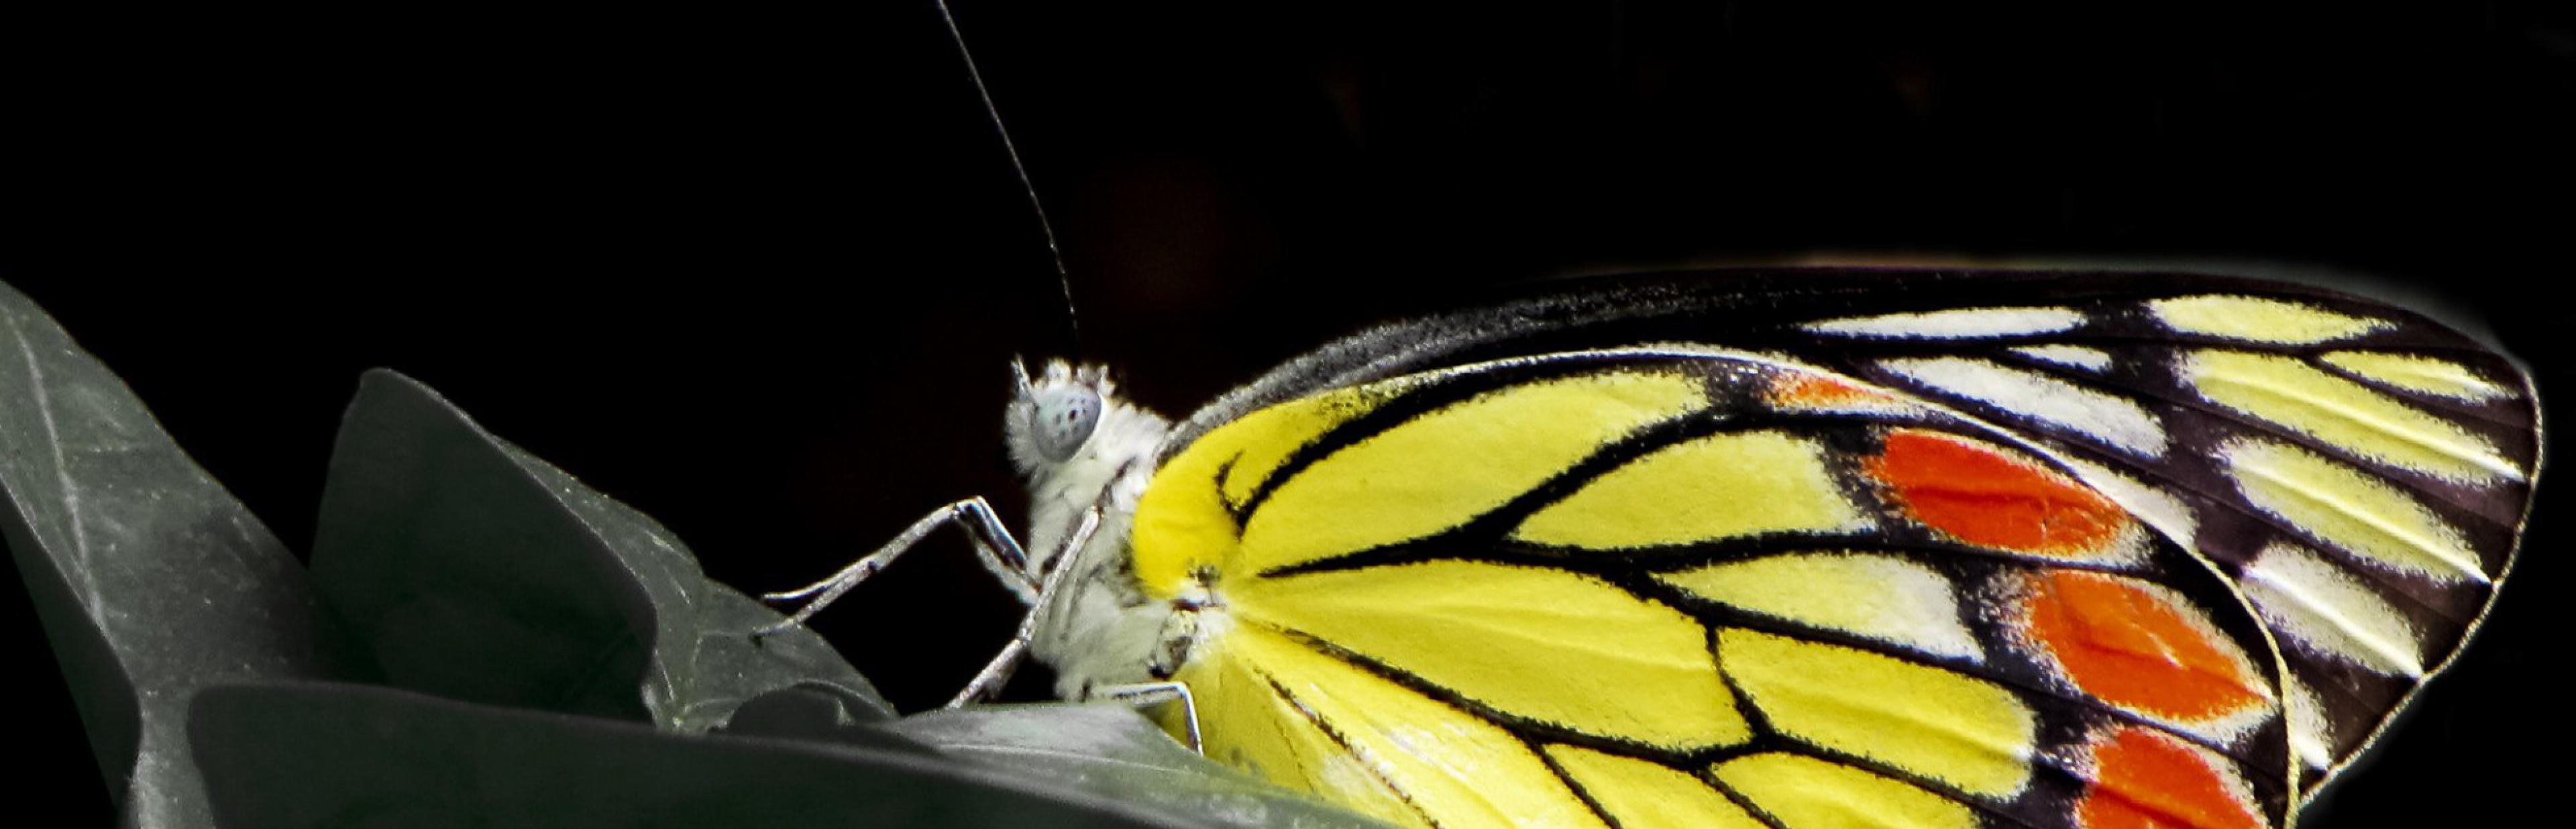 Ein Schmetterling mit gelb-orangenen Flügeln, die von schwarzen Adern durchzogen sind.